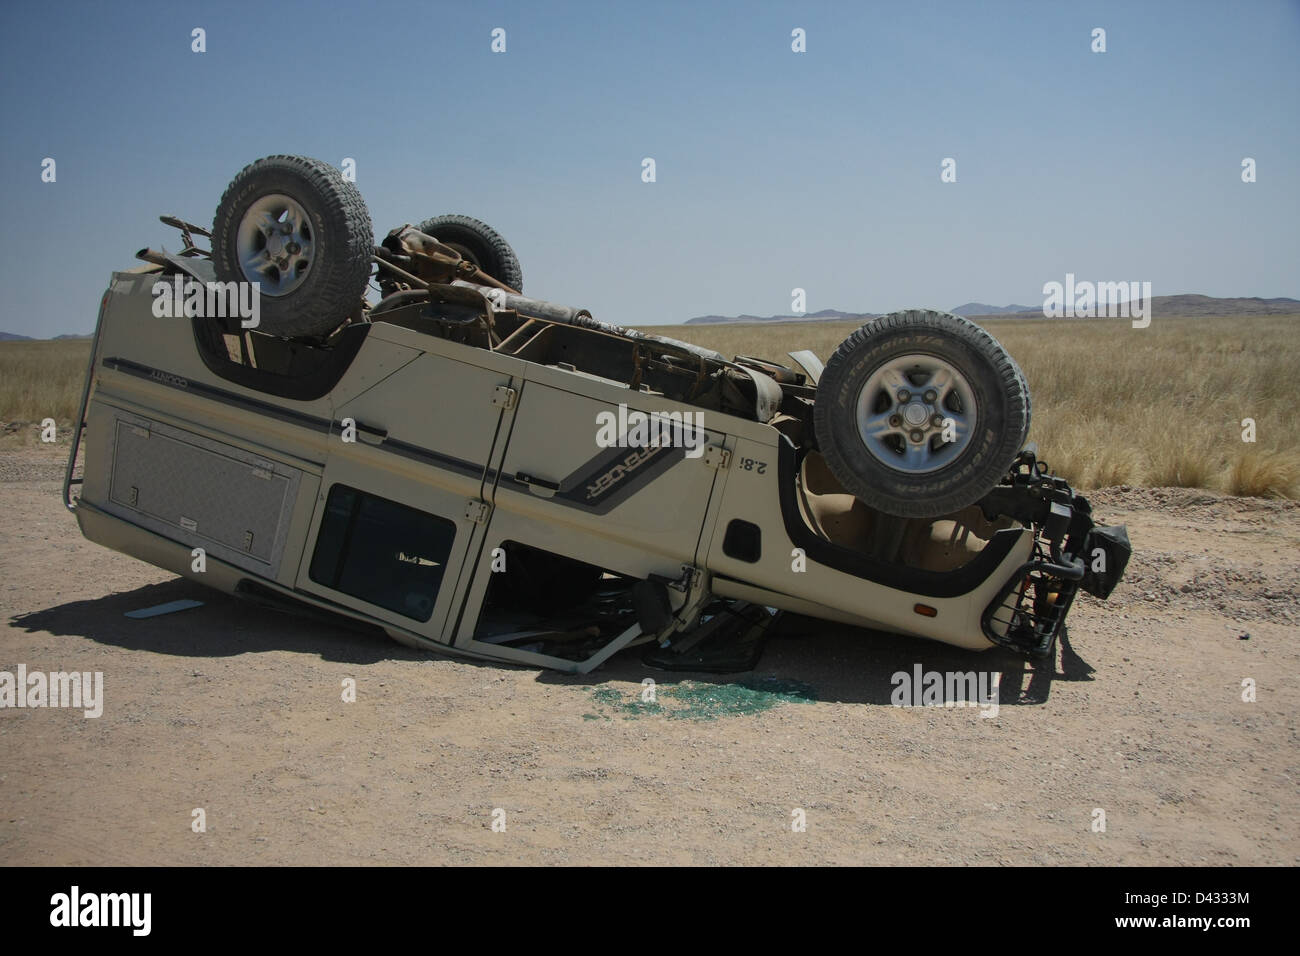 Crashed vehicle in Etosha National Park, Namibia Stock Photo